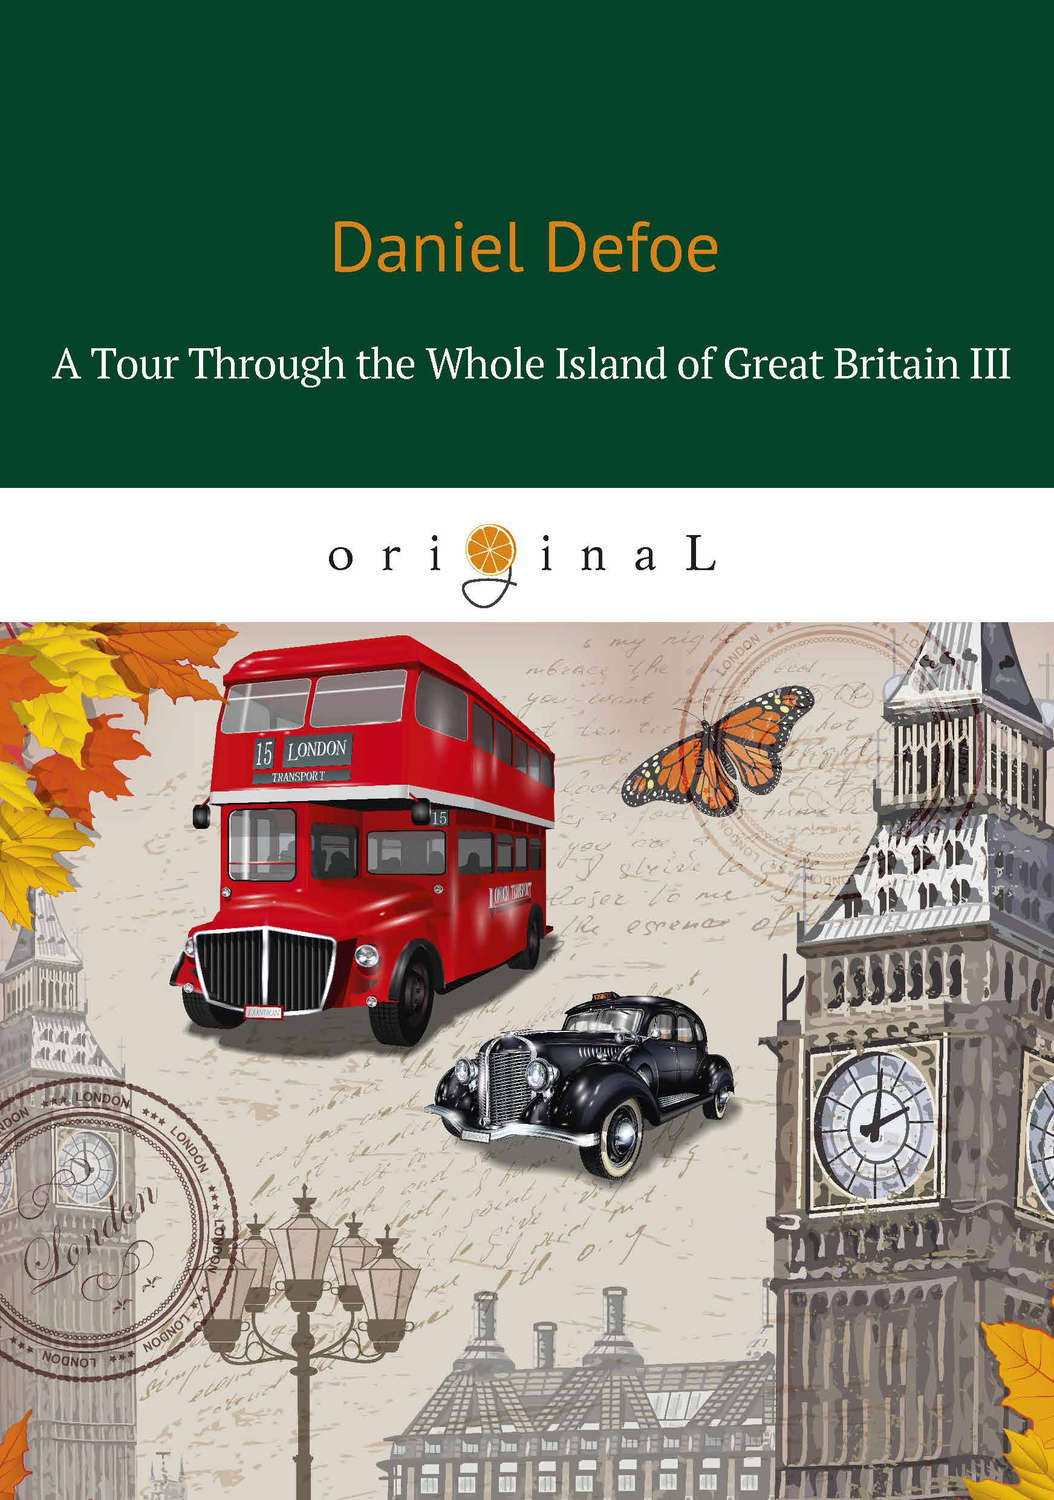 daniel defoe tour through england